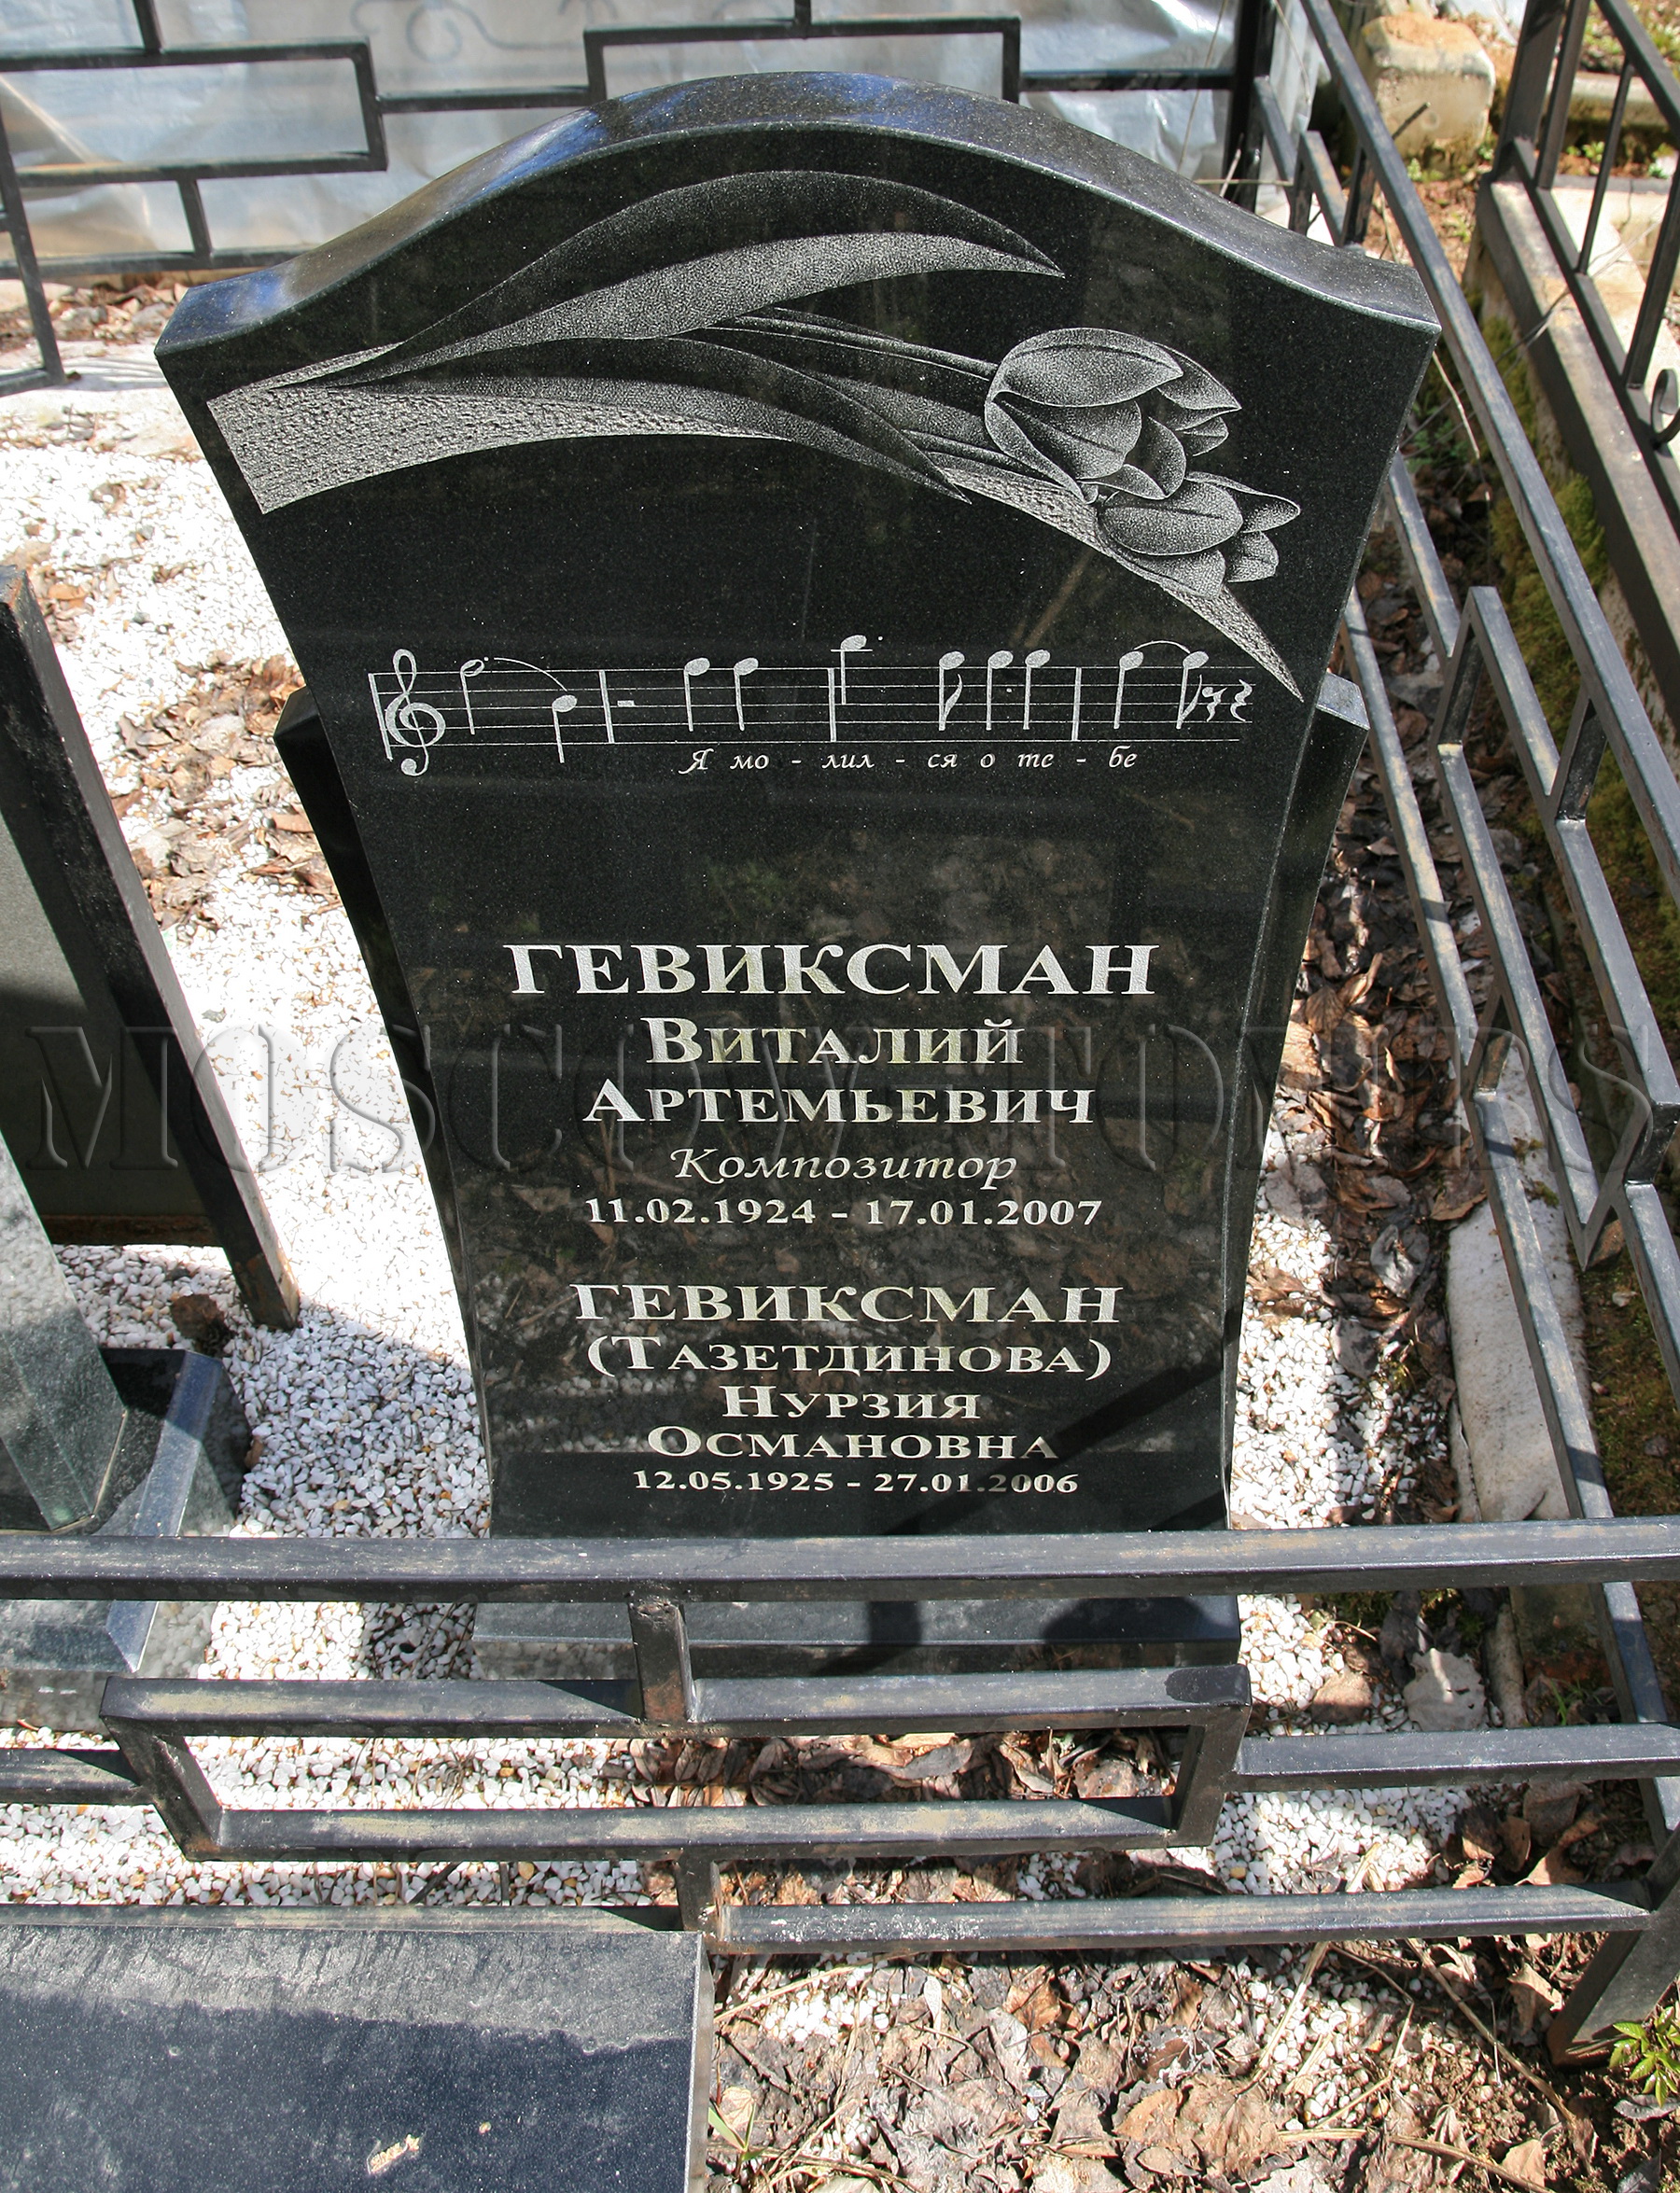 Памятник Виталию Гевиксману